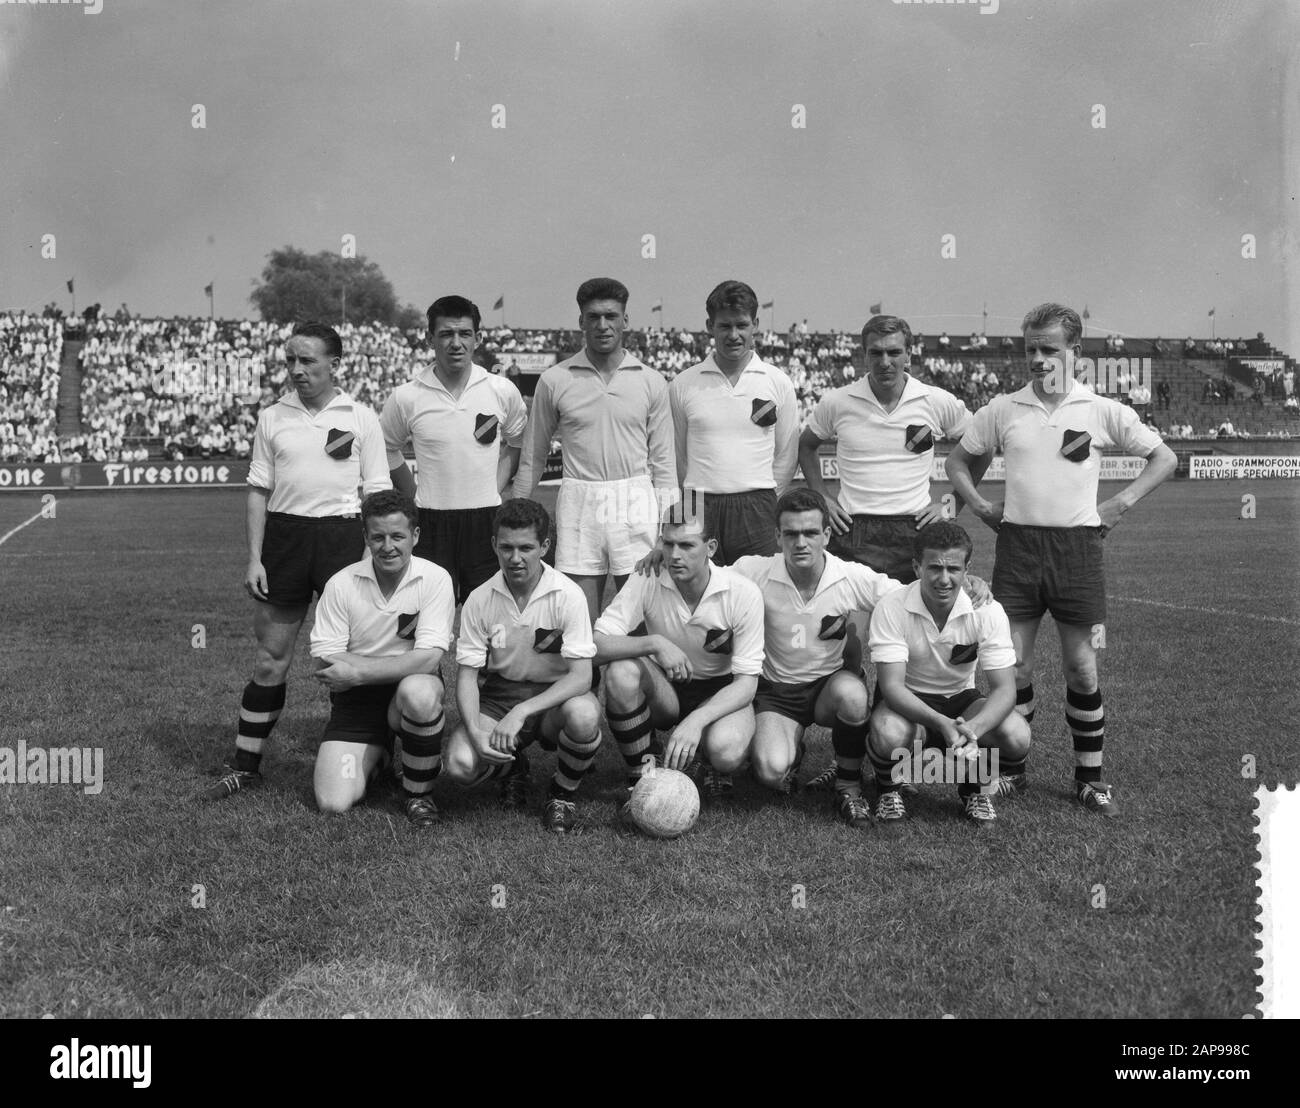 Ajax versus NAC 3-0, team of NAC Date: 23 August 1959 Stock Photo